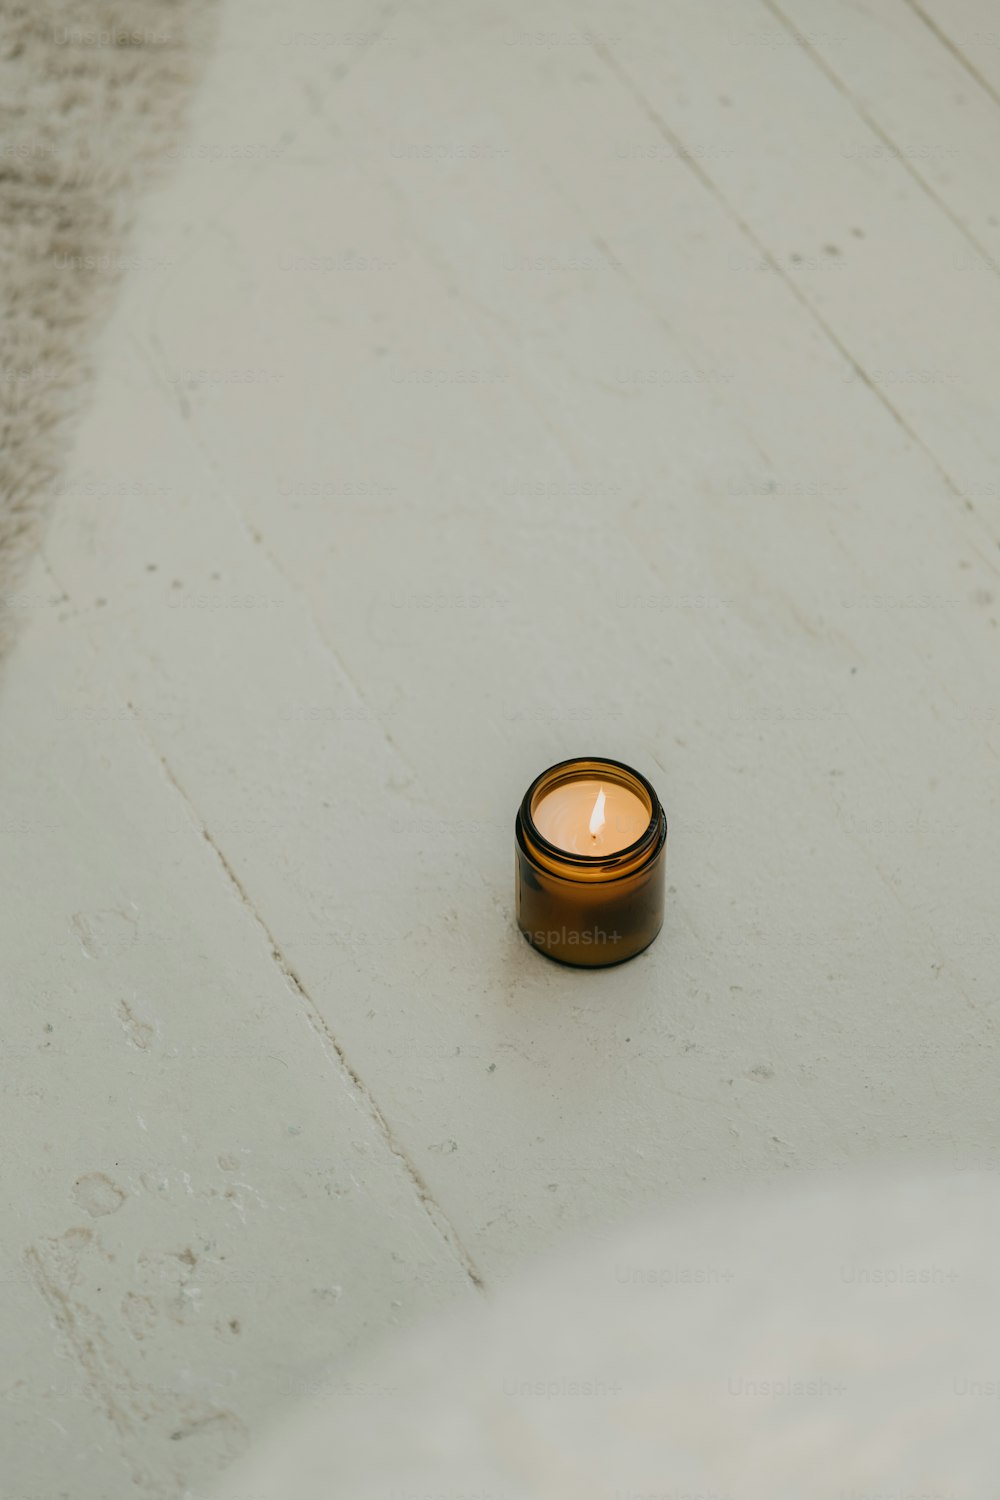 una piccola candela seduta su una superficie bianca